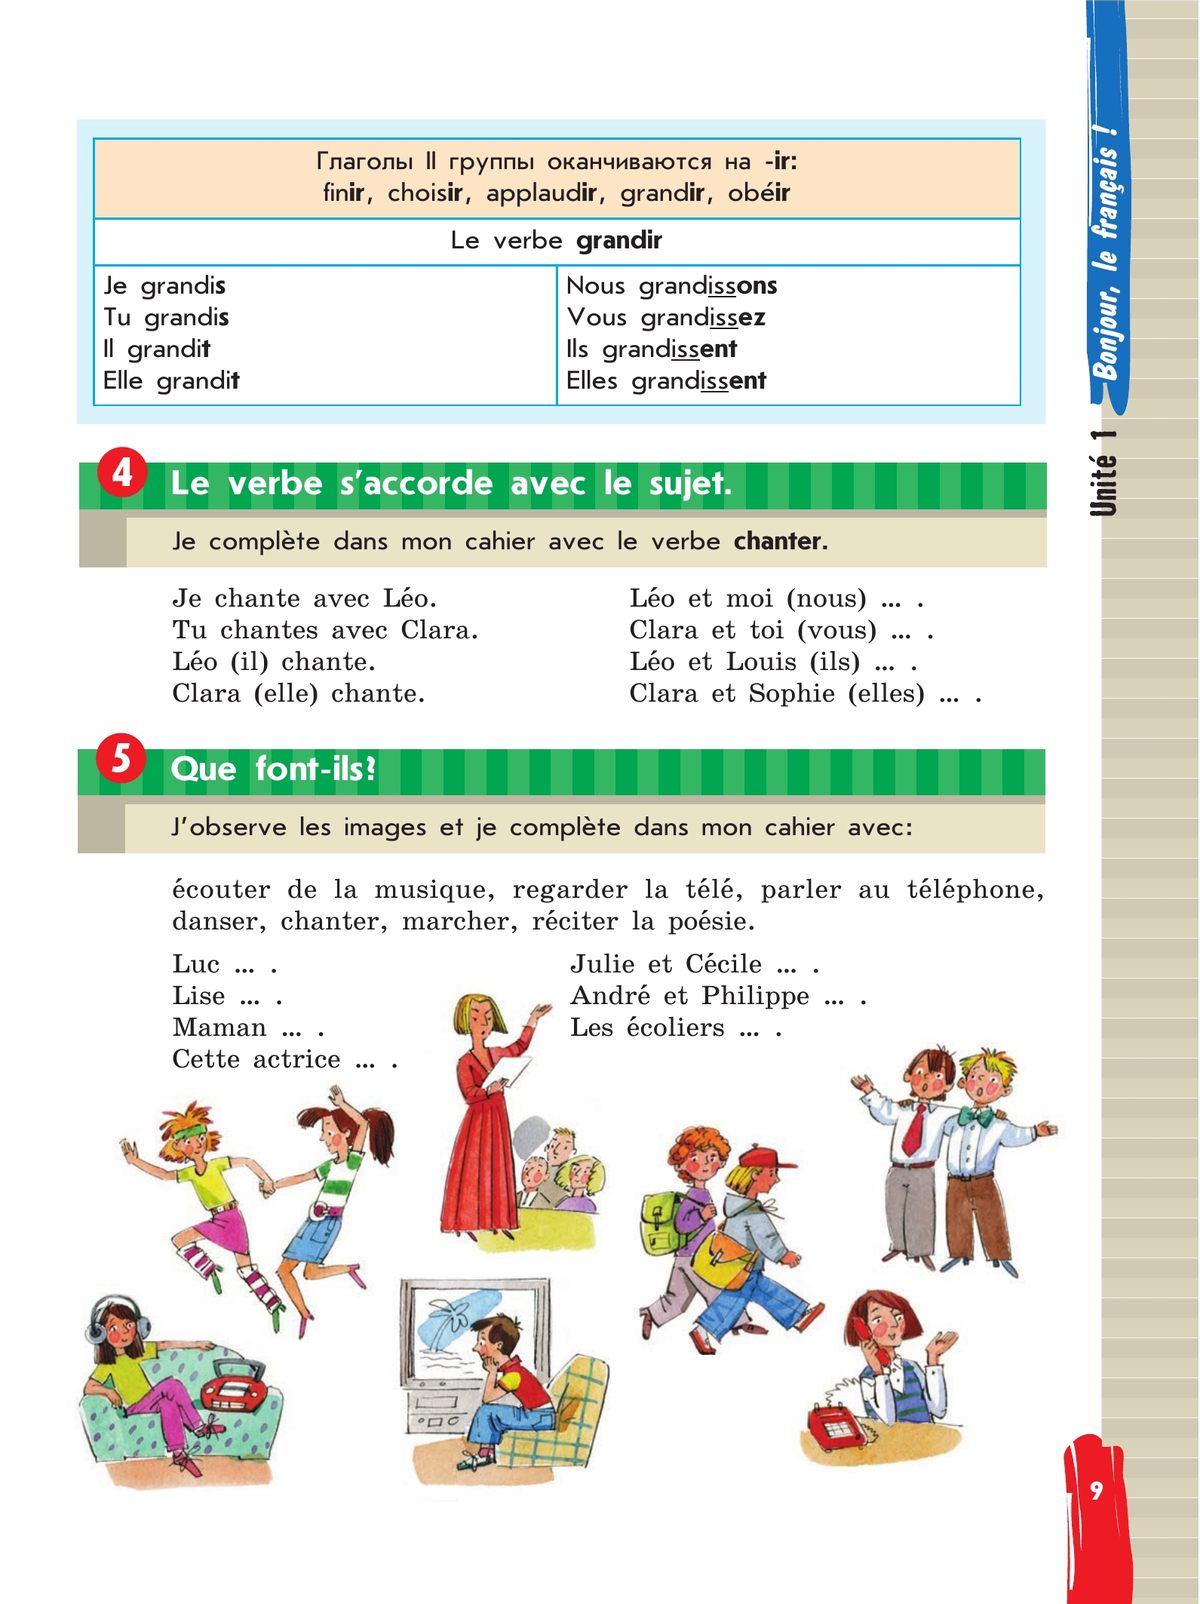 Французский язык. 5 класс. Учебник. В 2 ч. Часть 1 5